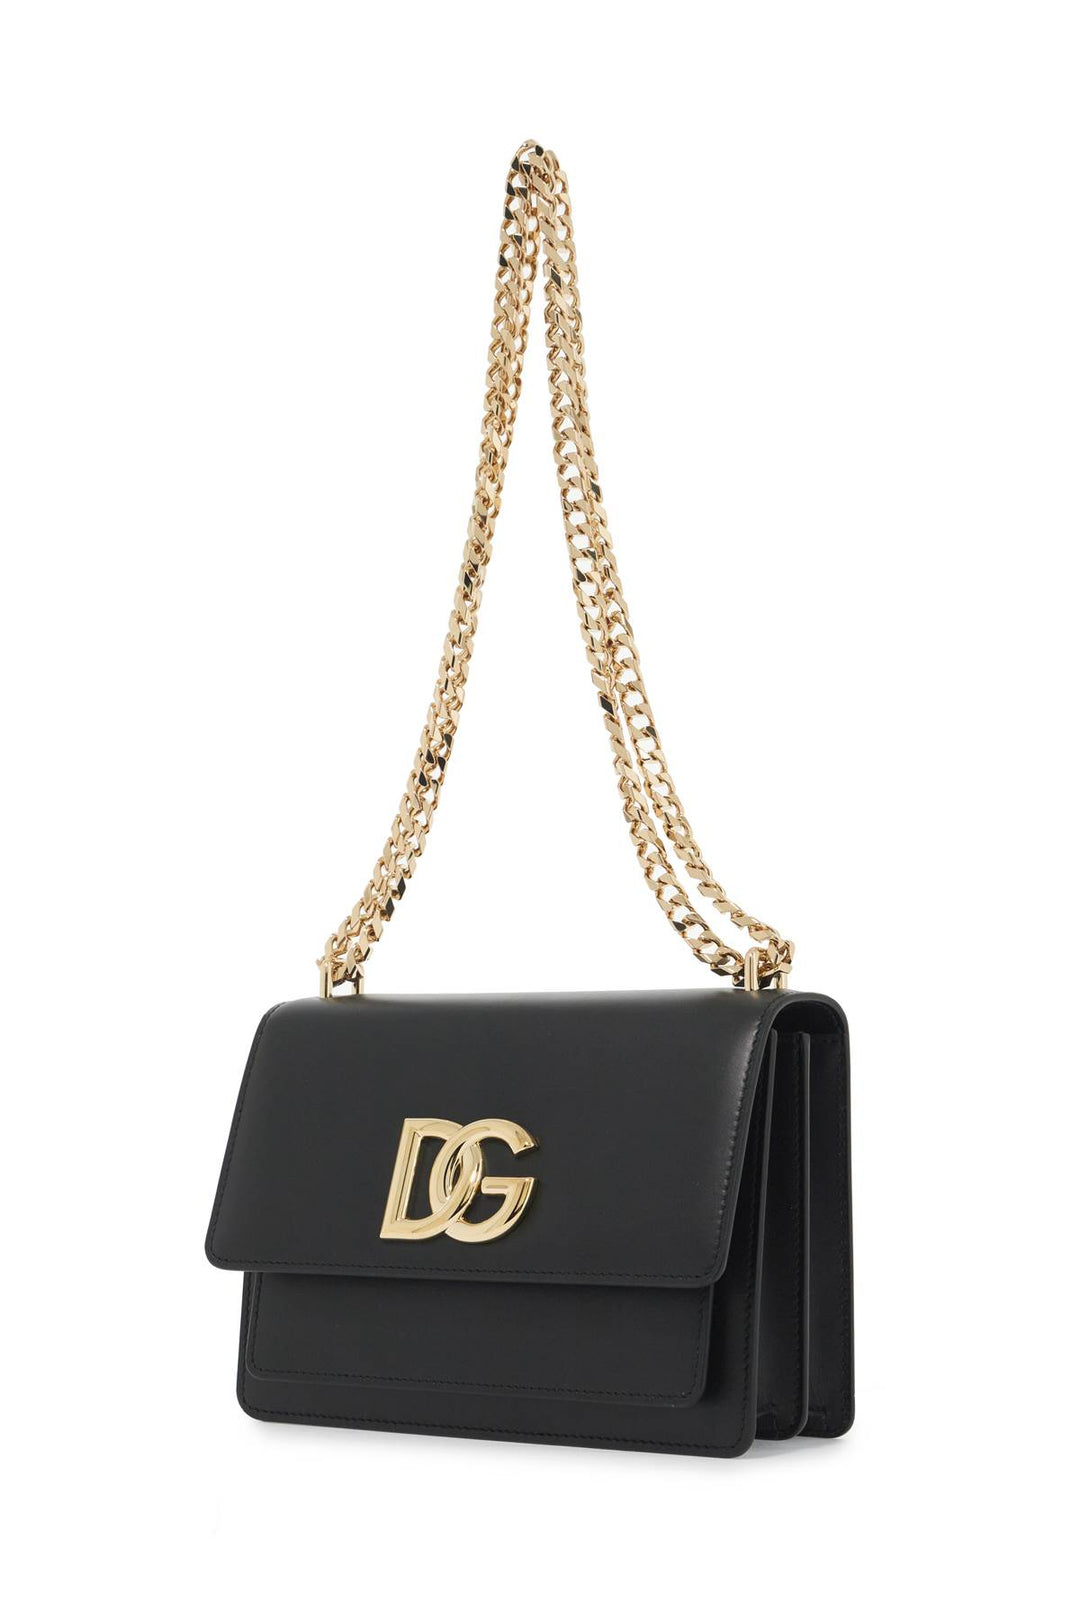 Dolce & Gabbana Shoulder Bag 3.   Black